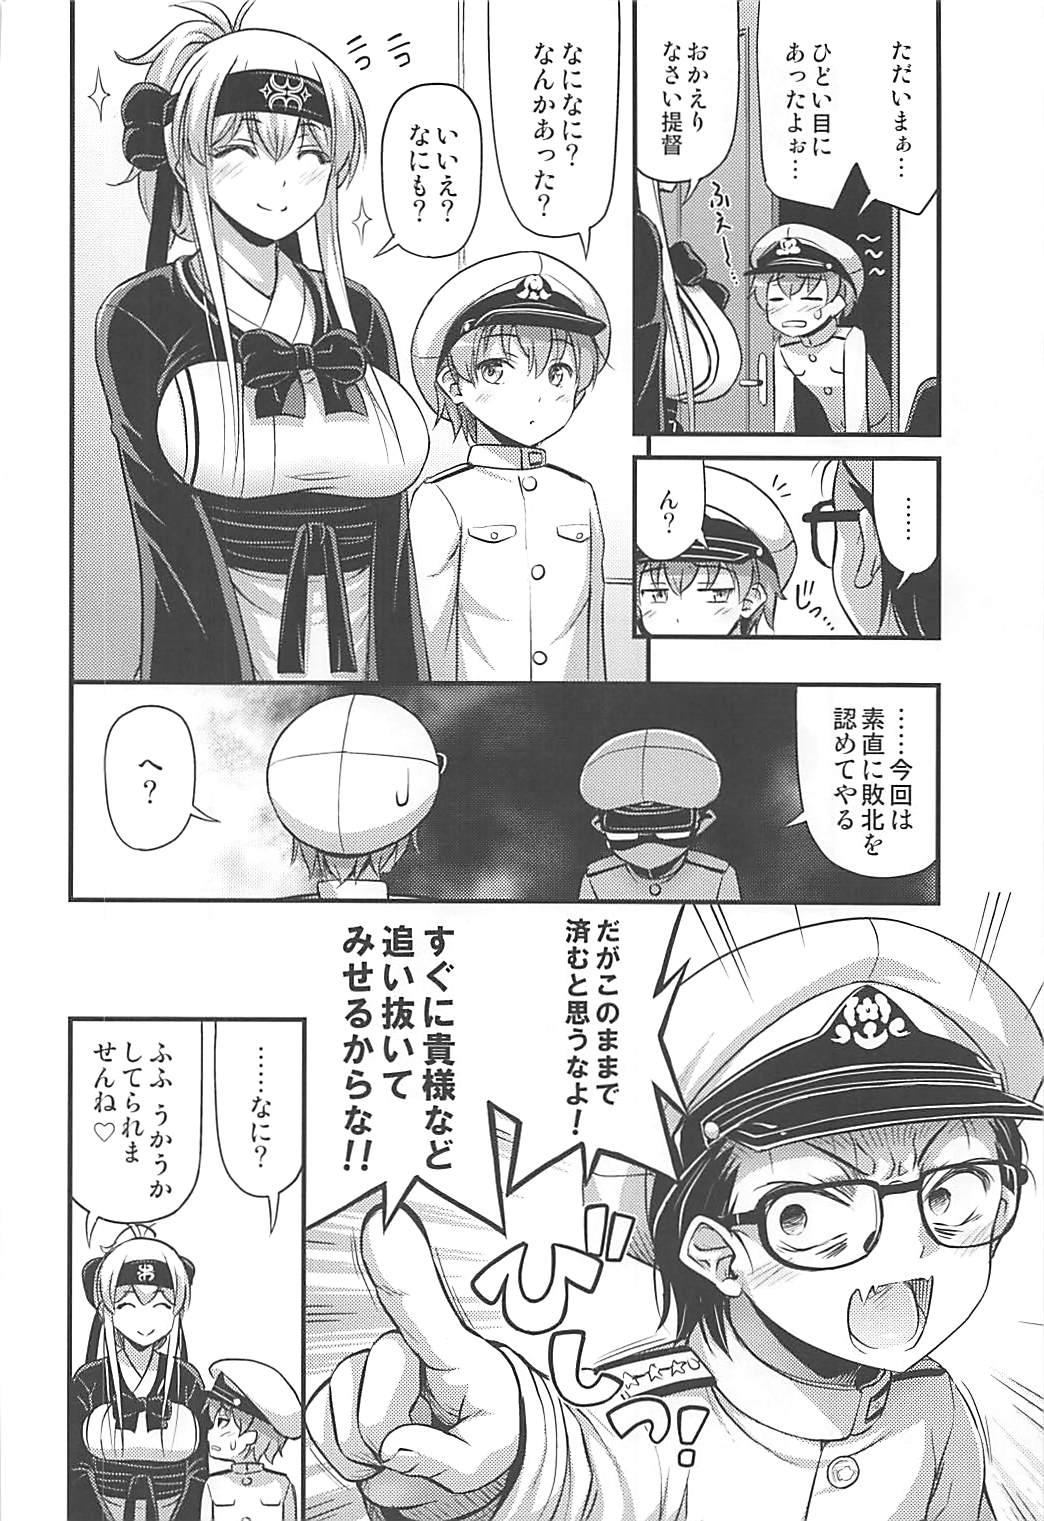 Kamoi-san 2 + C93 Omake Manga 26